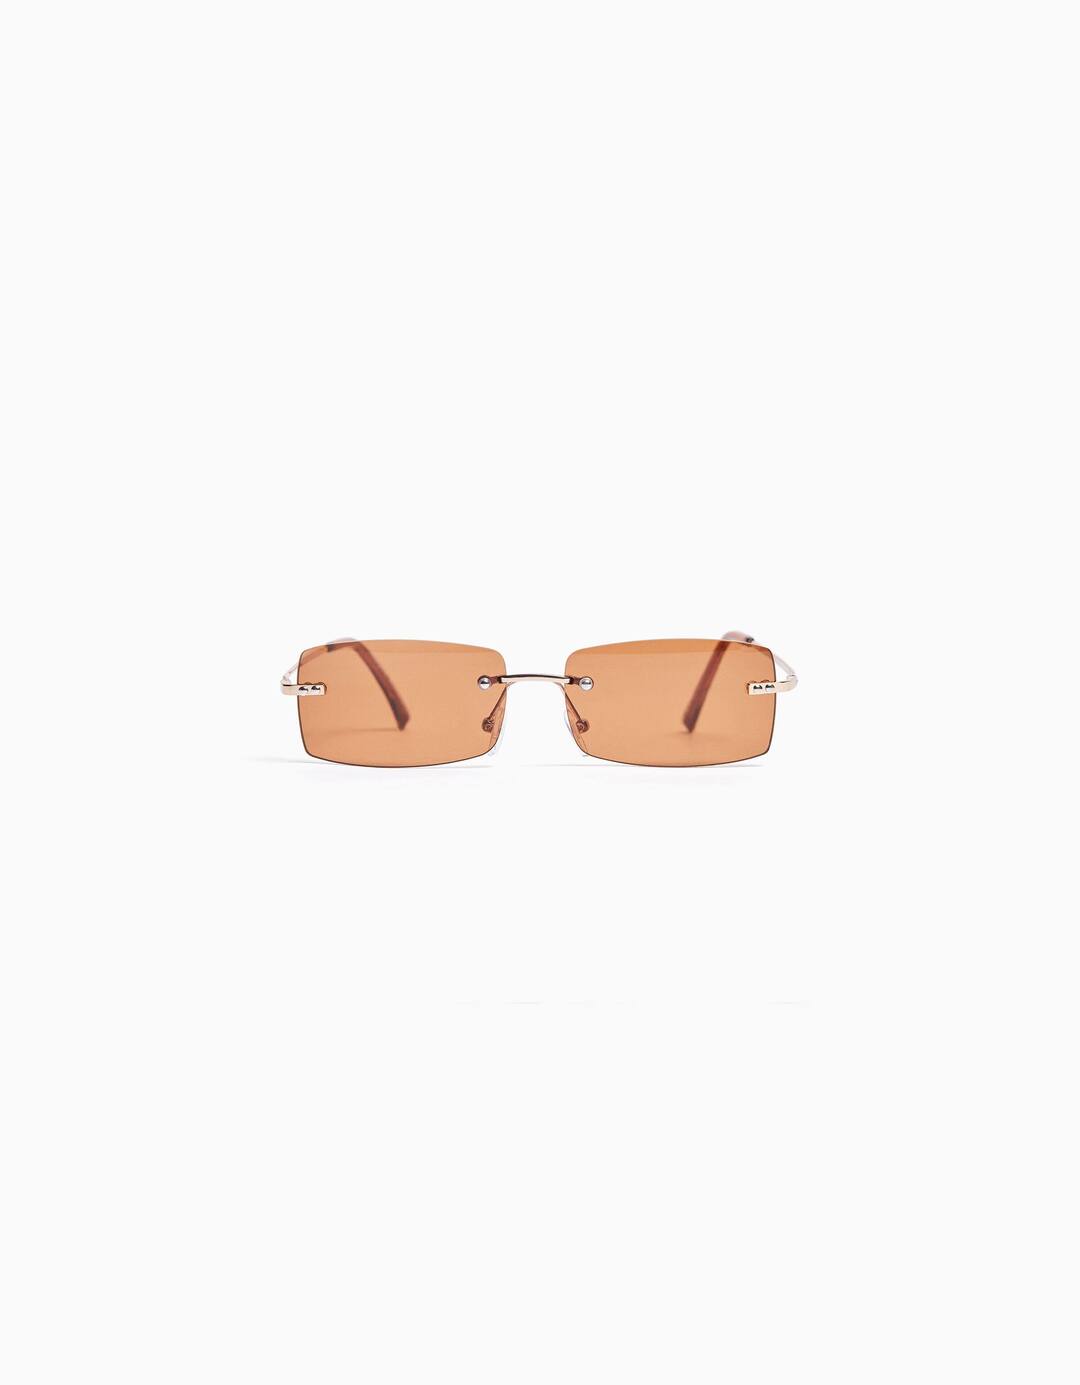 Rectangular sunglasses with no frame